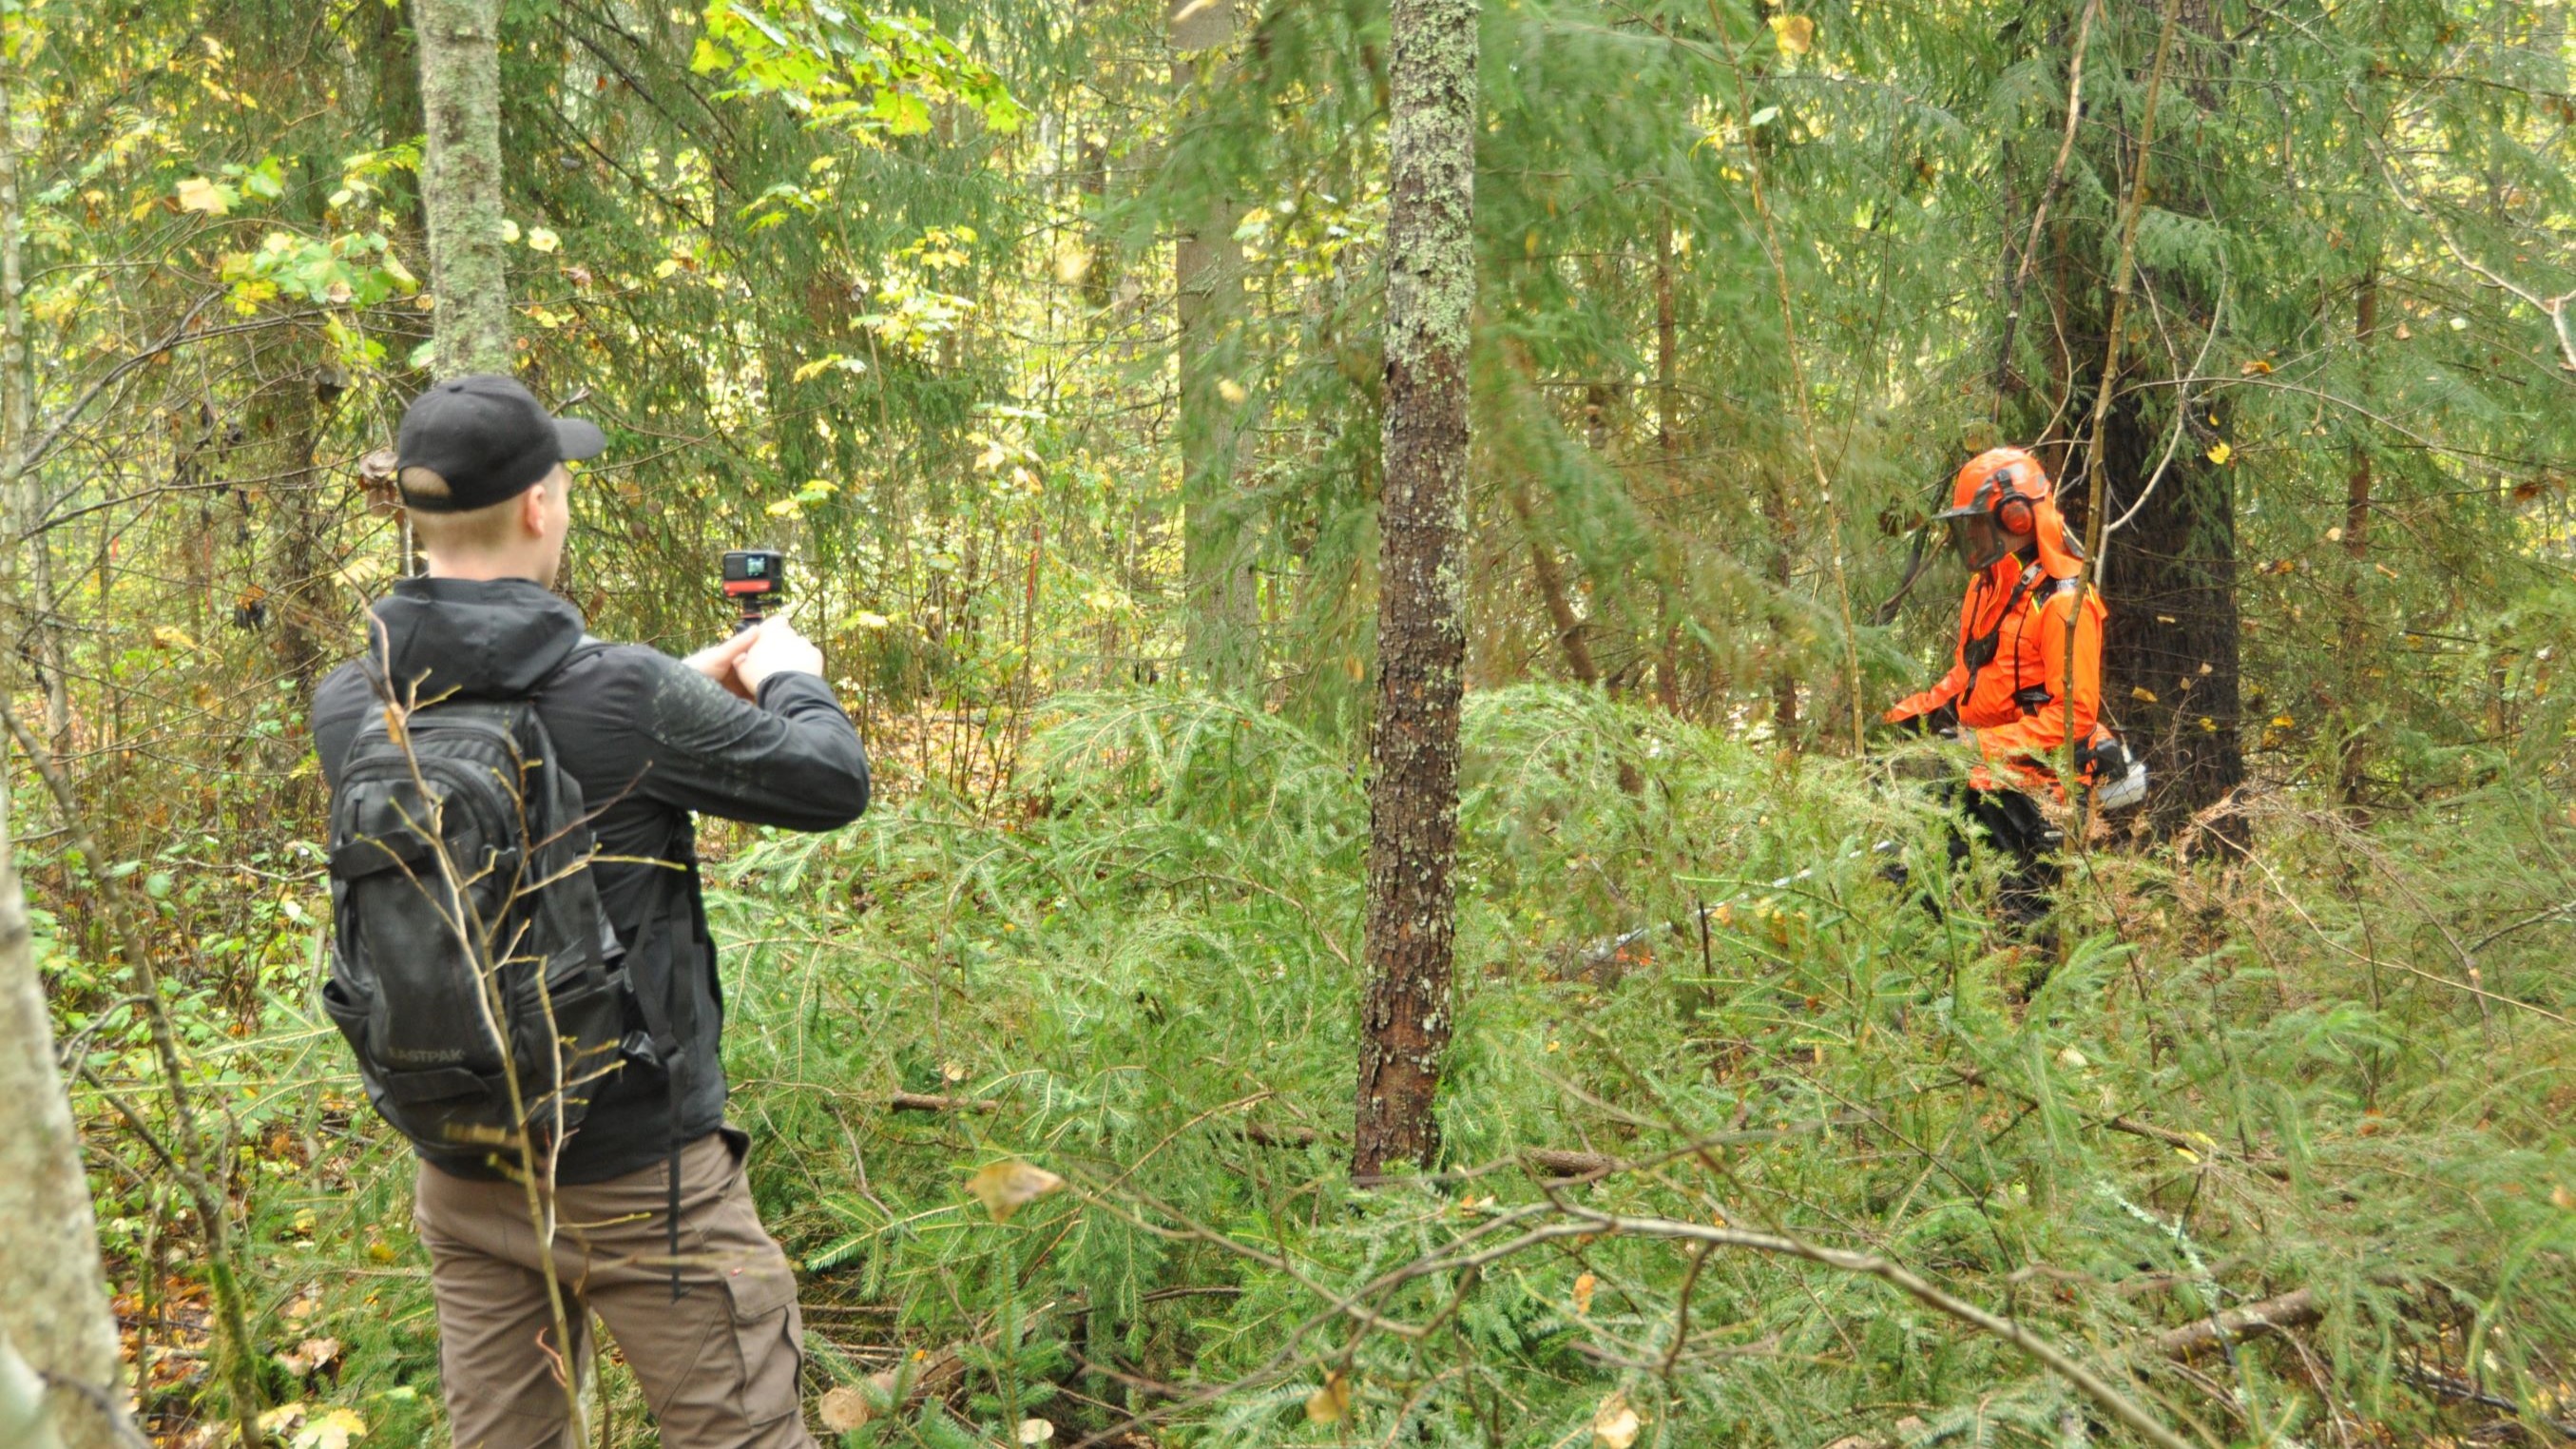 Kuvaaja kamera kädessä kuvaa suojavarusteisiin pukeutunutta metsuria, joka on kaatanut raivaussahalla useita muutaman metrin mittaisia kuusia.